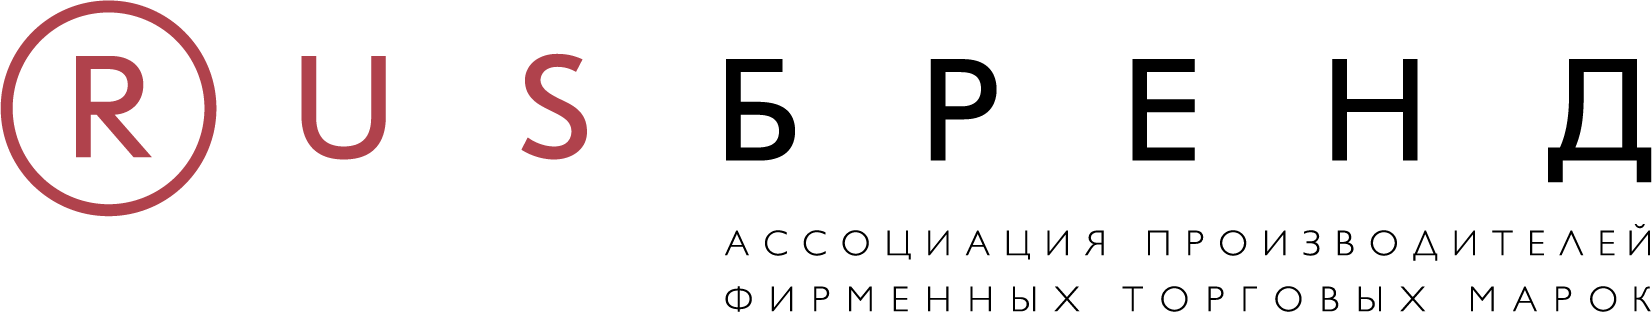 Лого Ассоциация производителей фирменных торговых марок 